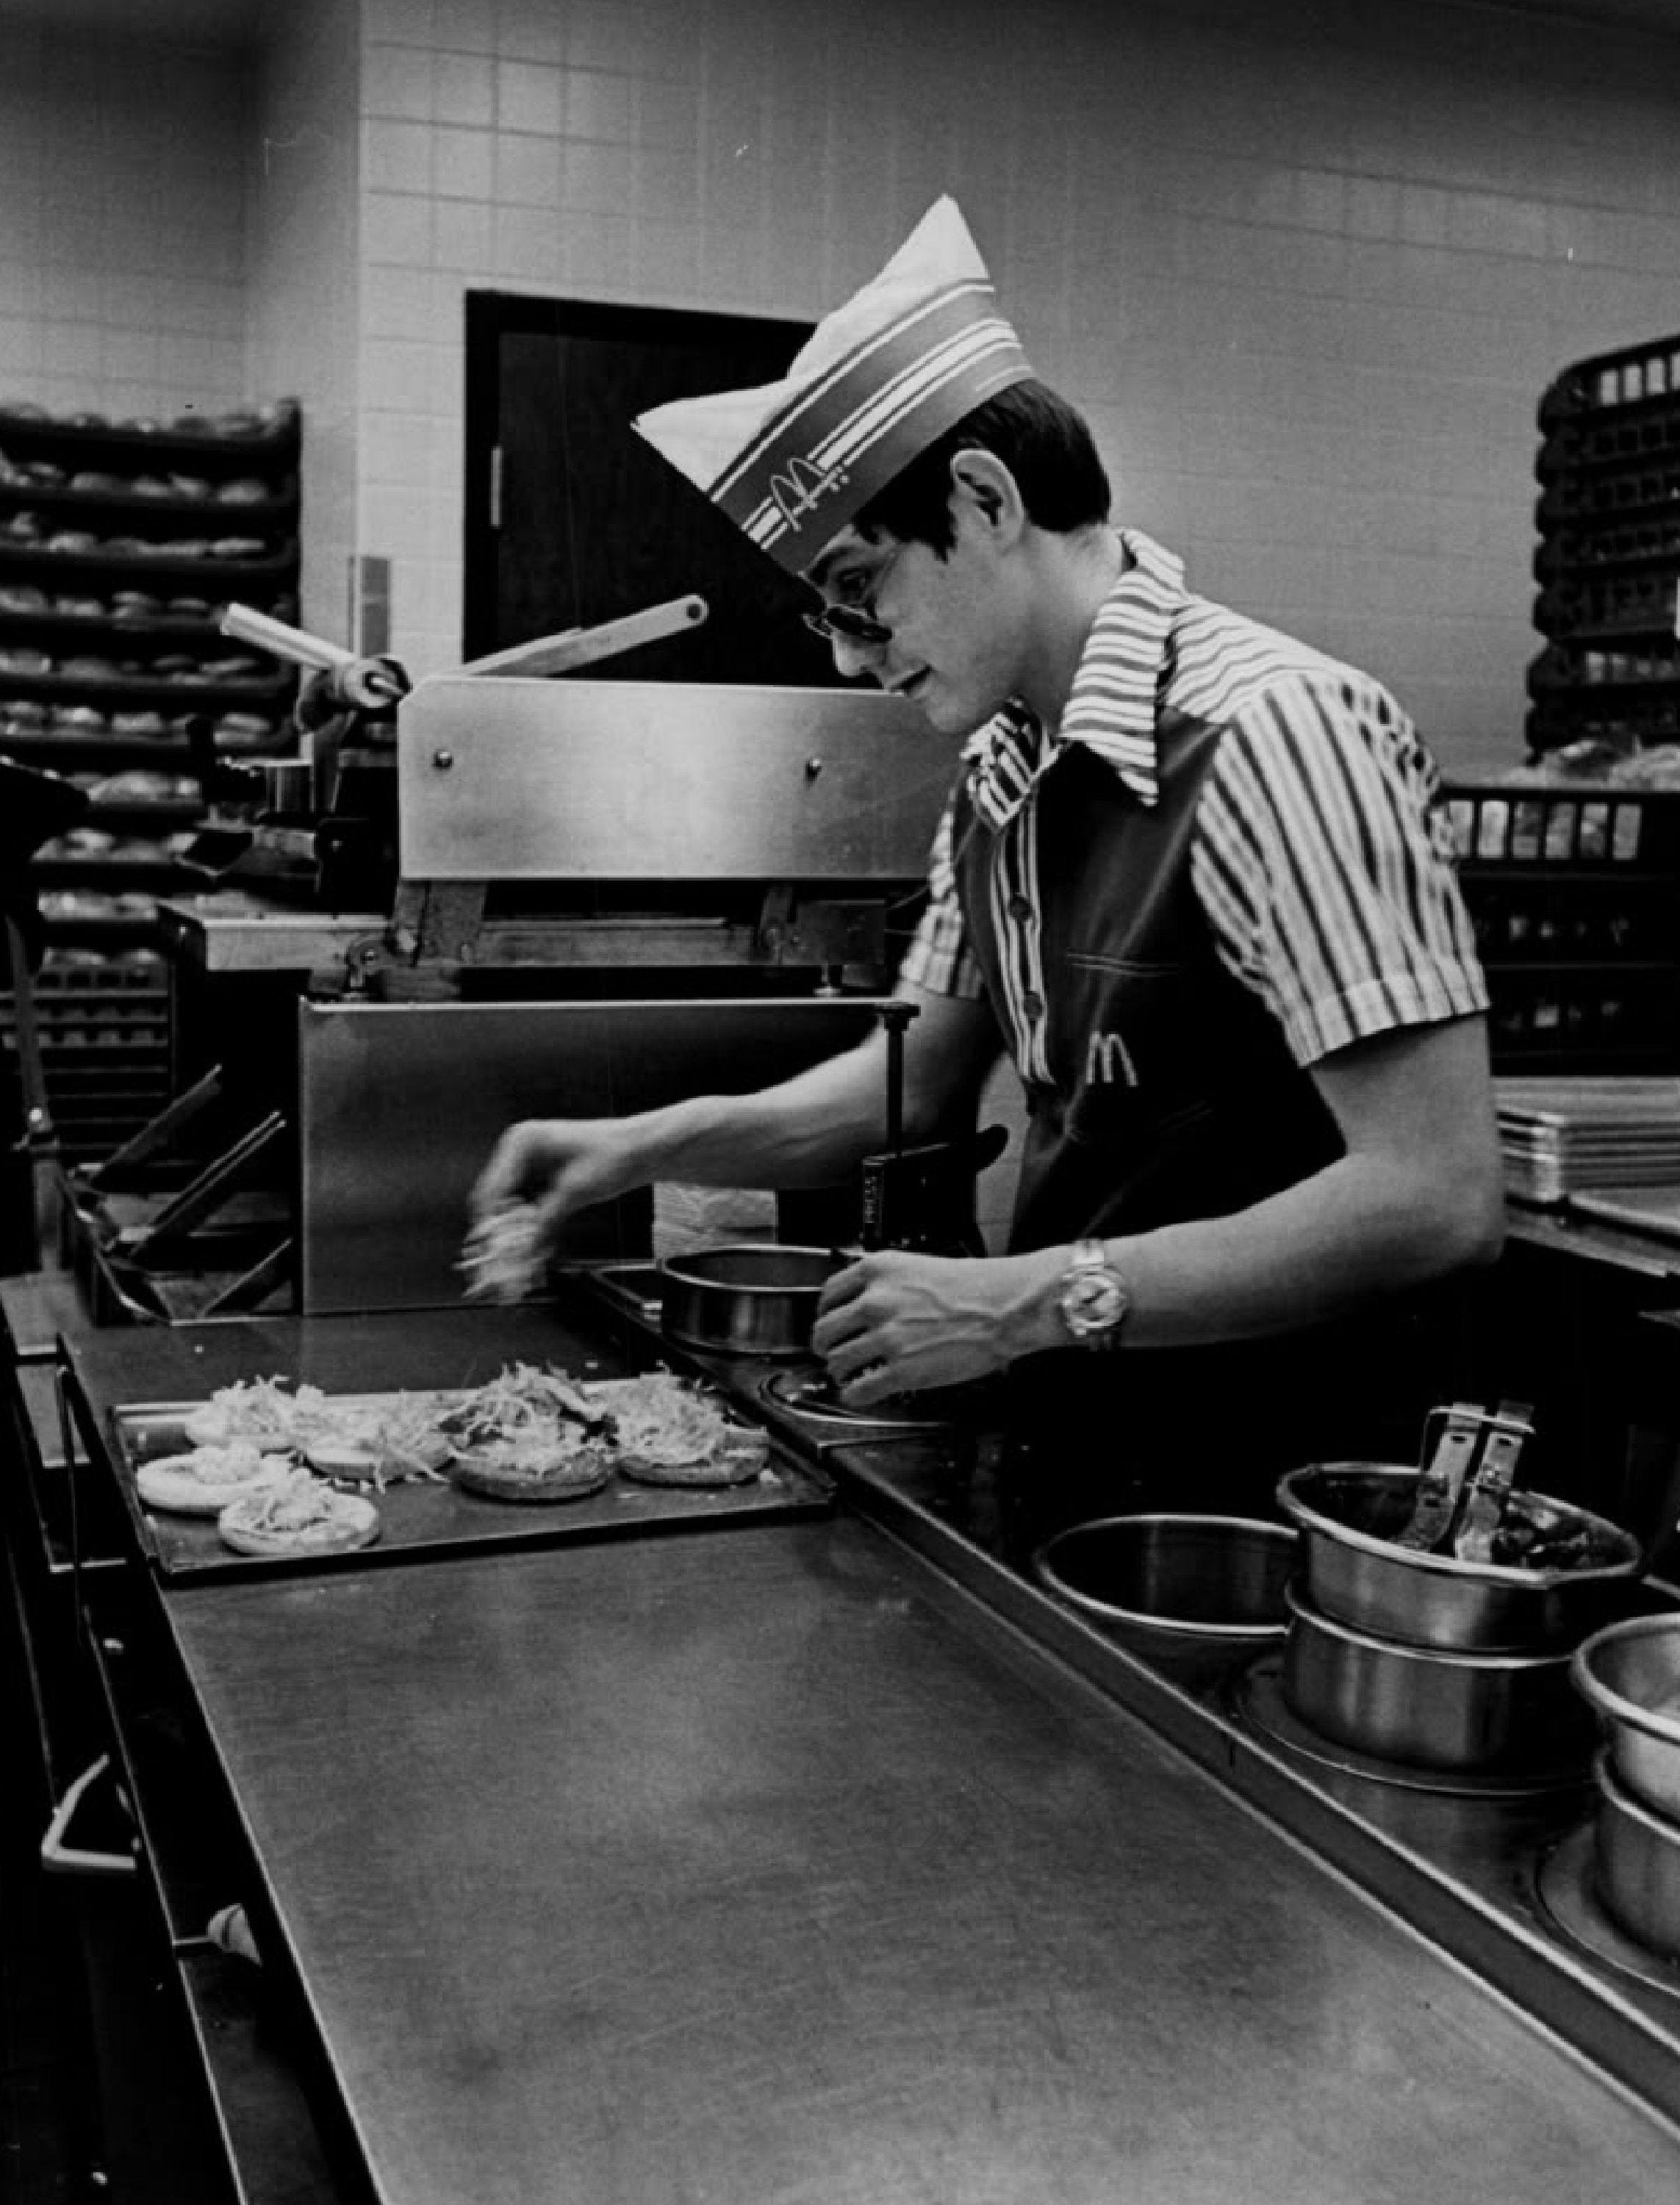 Ein Angestellter bereitet 1979 in einem McDonald's-Restaurant Burger zu